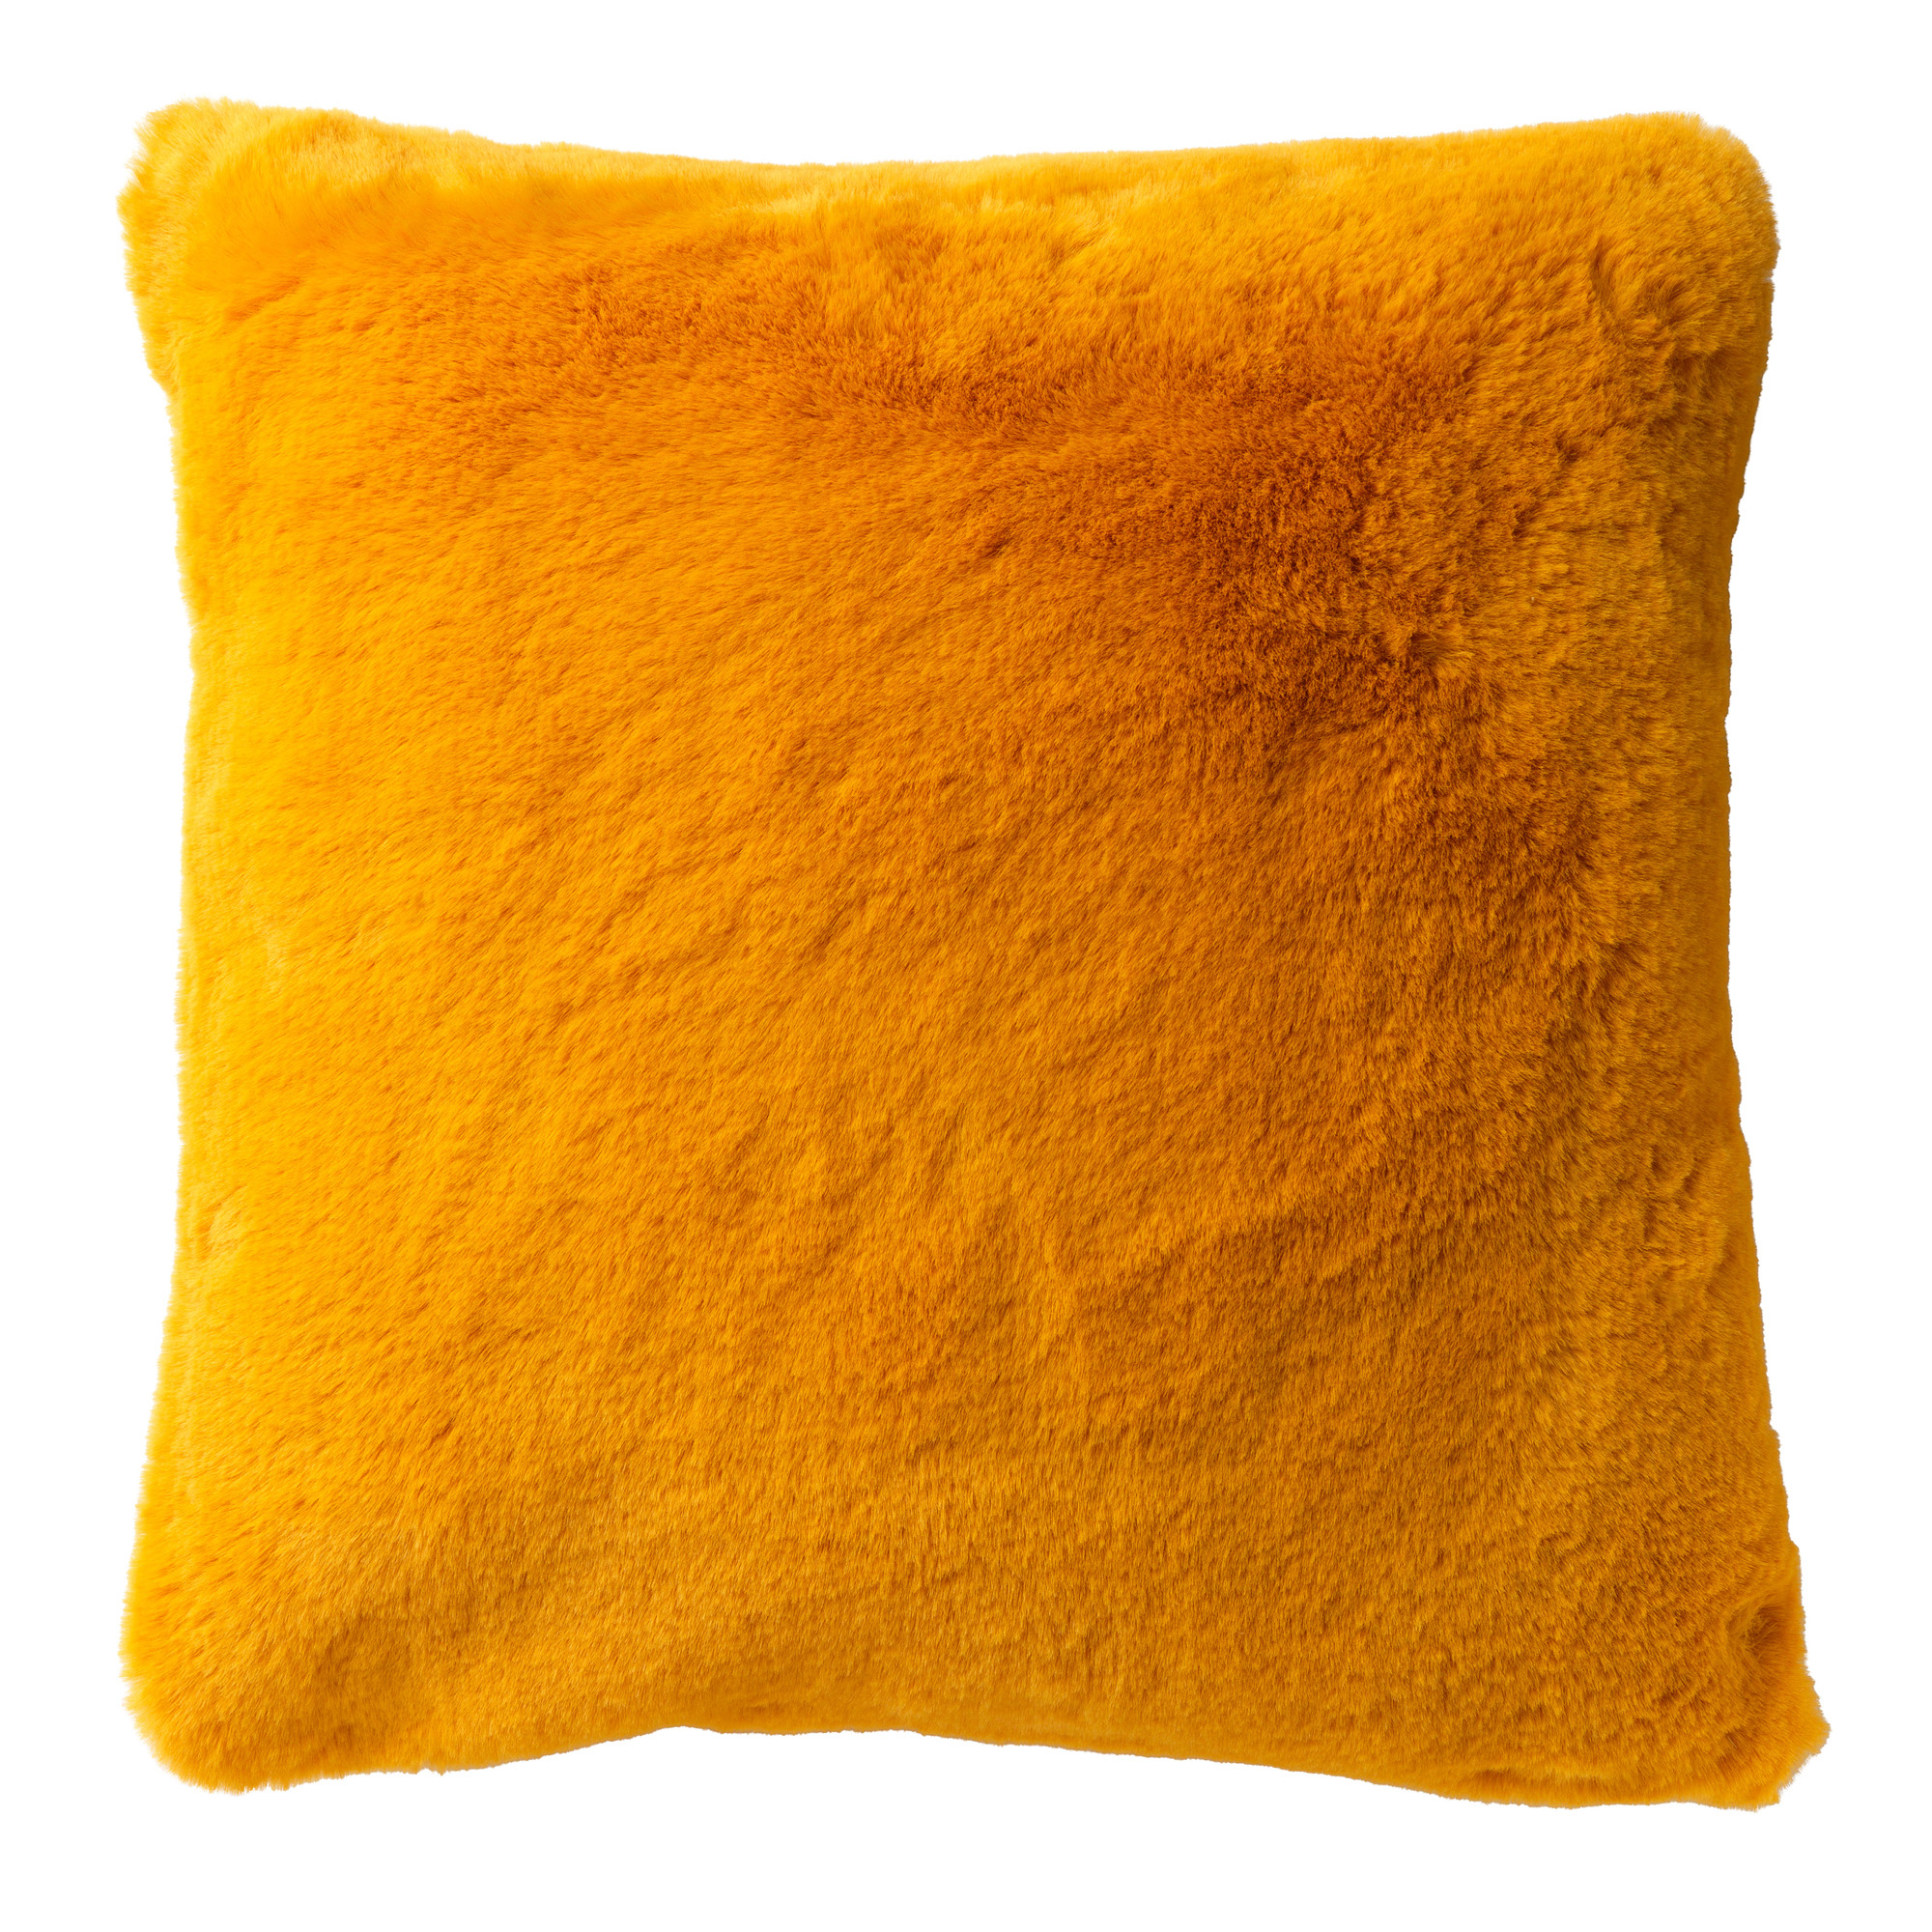 ZAYA - Kussenhoes 60x60 cm - bontlook - effen kleur - Golden Glow - geel